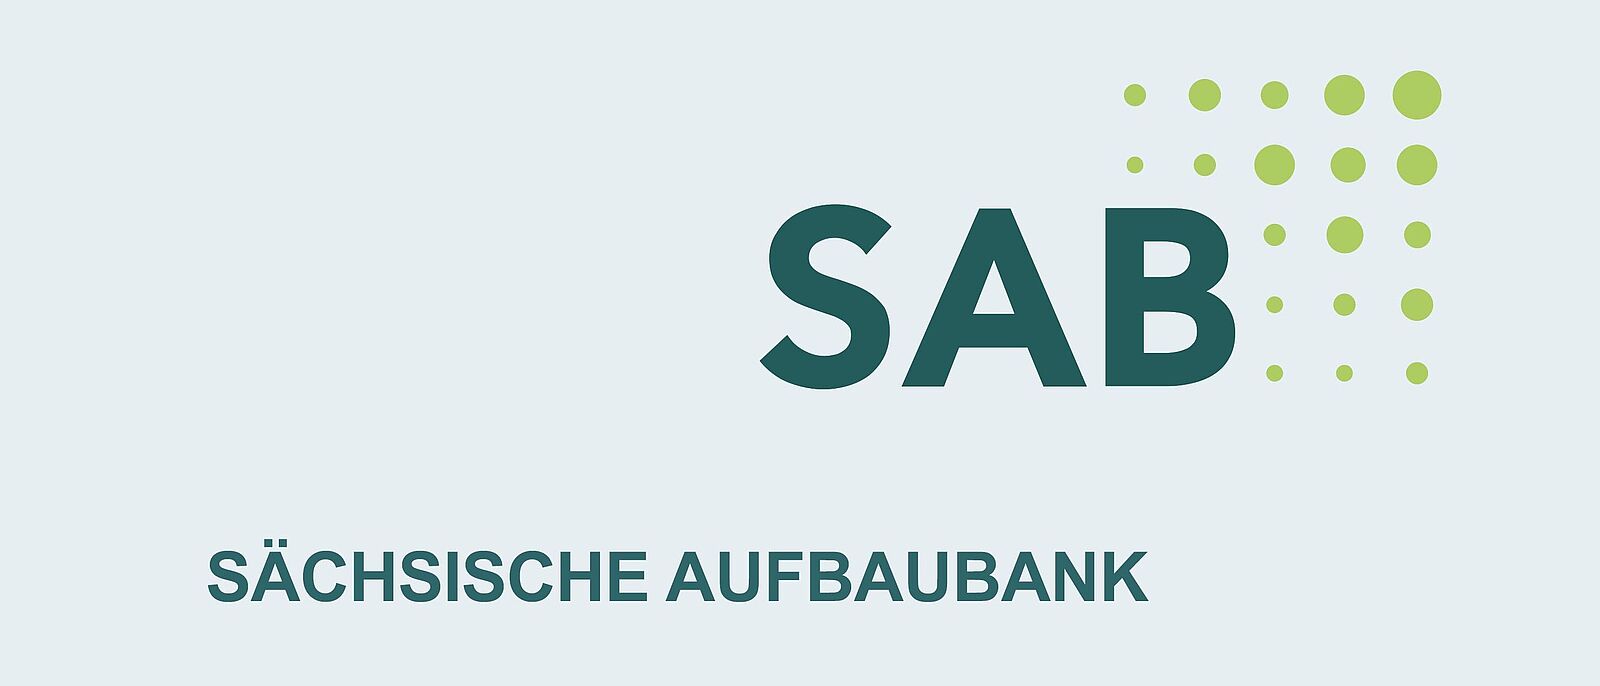 Rechts oben das Logo der SAB Sachsen (dunkelgrüner Schriftzug \"SAB\", rchts umrandet von unterschiedlich großen hellgrünen Punkten, die ein Quadrat bilden). Darunter in dunkelgrün der Schriftzug \" SÄCHSISCHE AUFBAUBANK\"